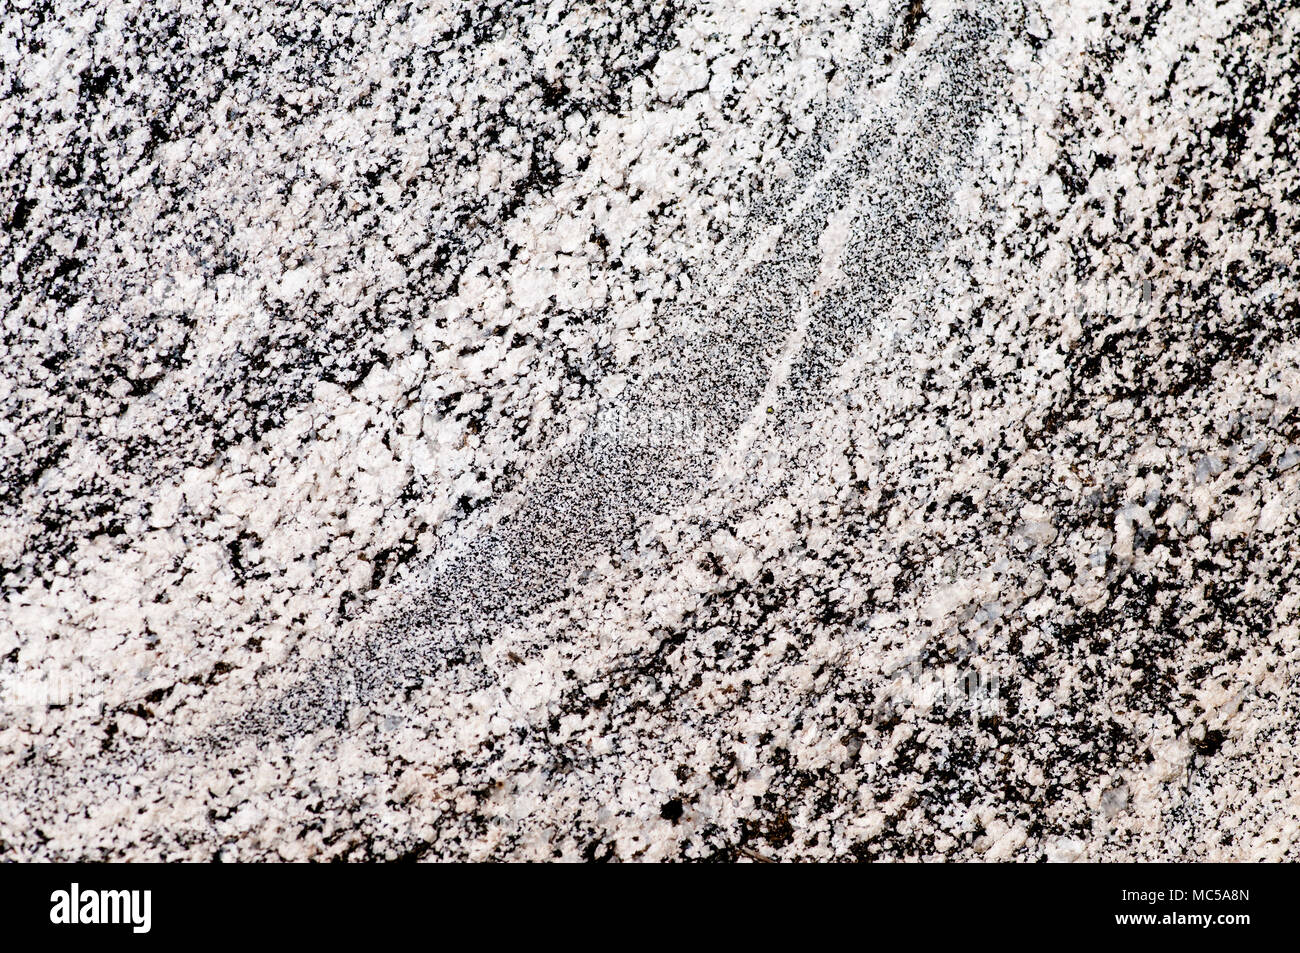 Granit aus dem Atlanta Lobe der Idaho Batholith in southcentral Idaho. Das Licht Mineralien sind Plagioklas und Quarz, während die dunklen mi Stockfoto